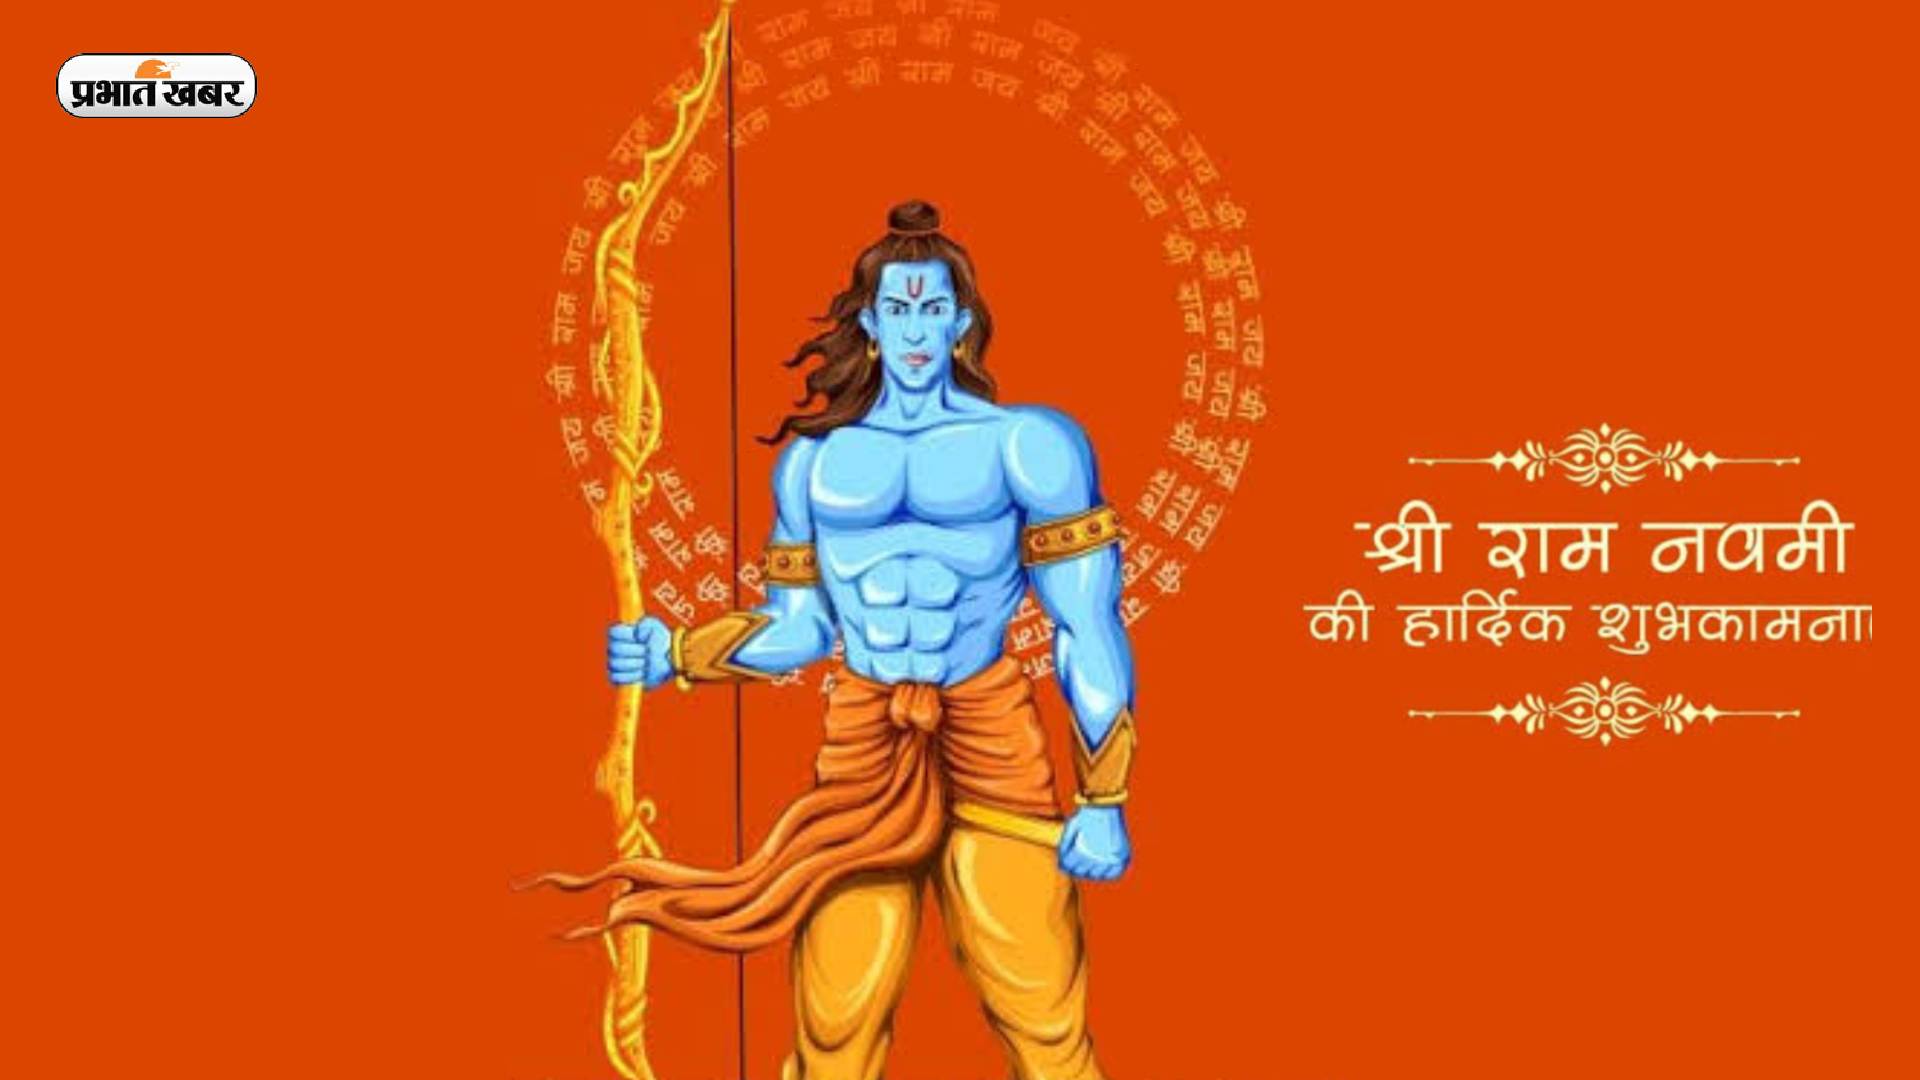 Happy Ram Navami 2023 Live:  फिर से श्री राम को आना होगा... यहां से अपनों को भेजें राम नवमी की शुभकामनाएं